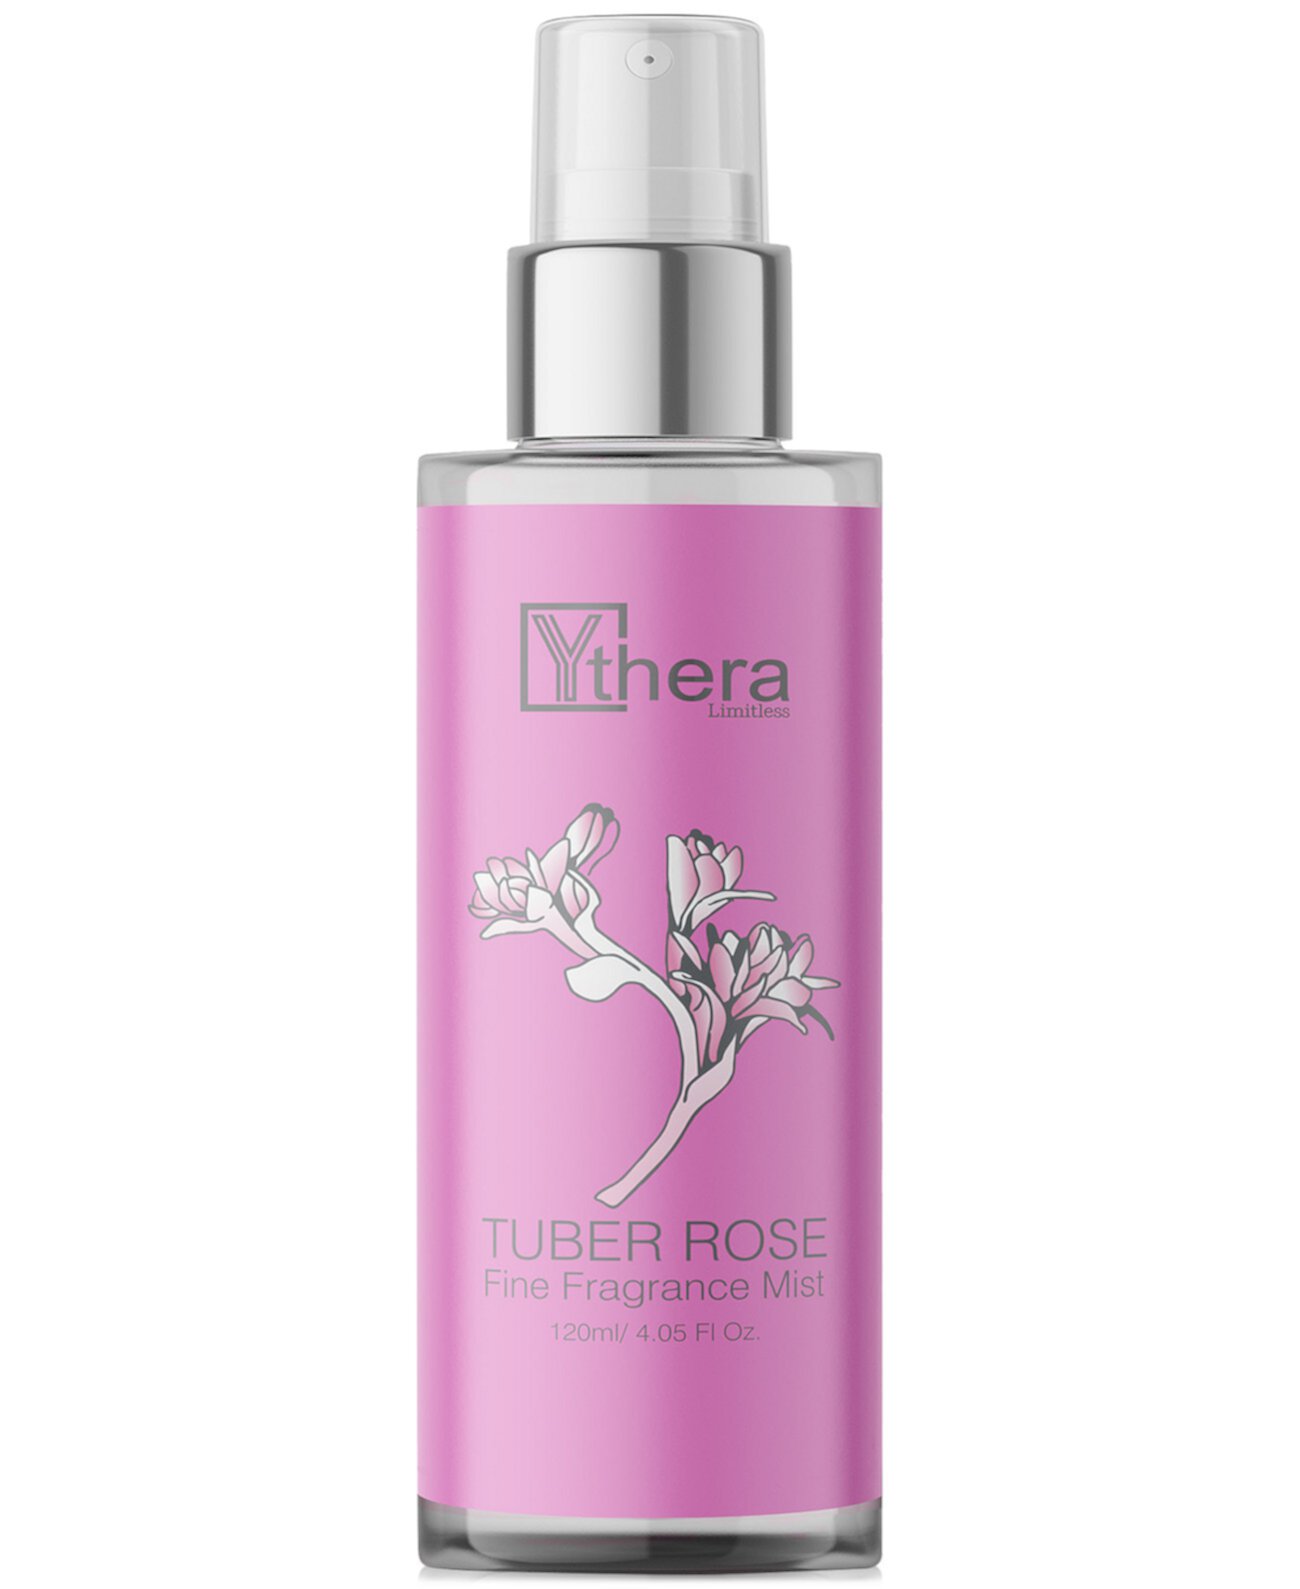 Tuber Rose Fine Fragrance Mist, 4.05 oz. Ythera Beauty